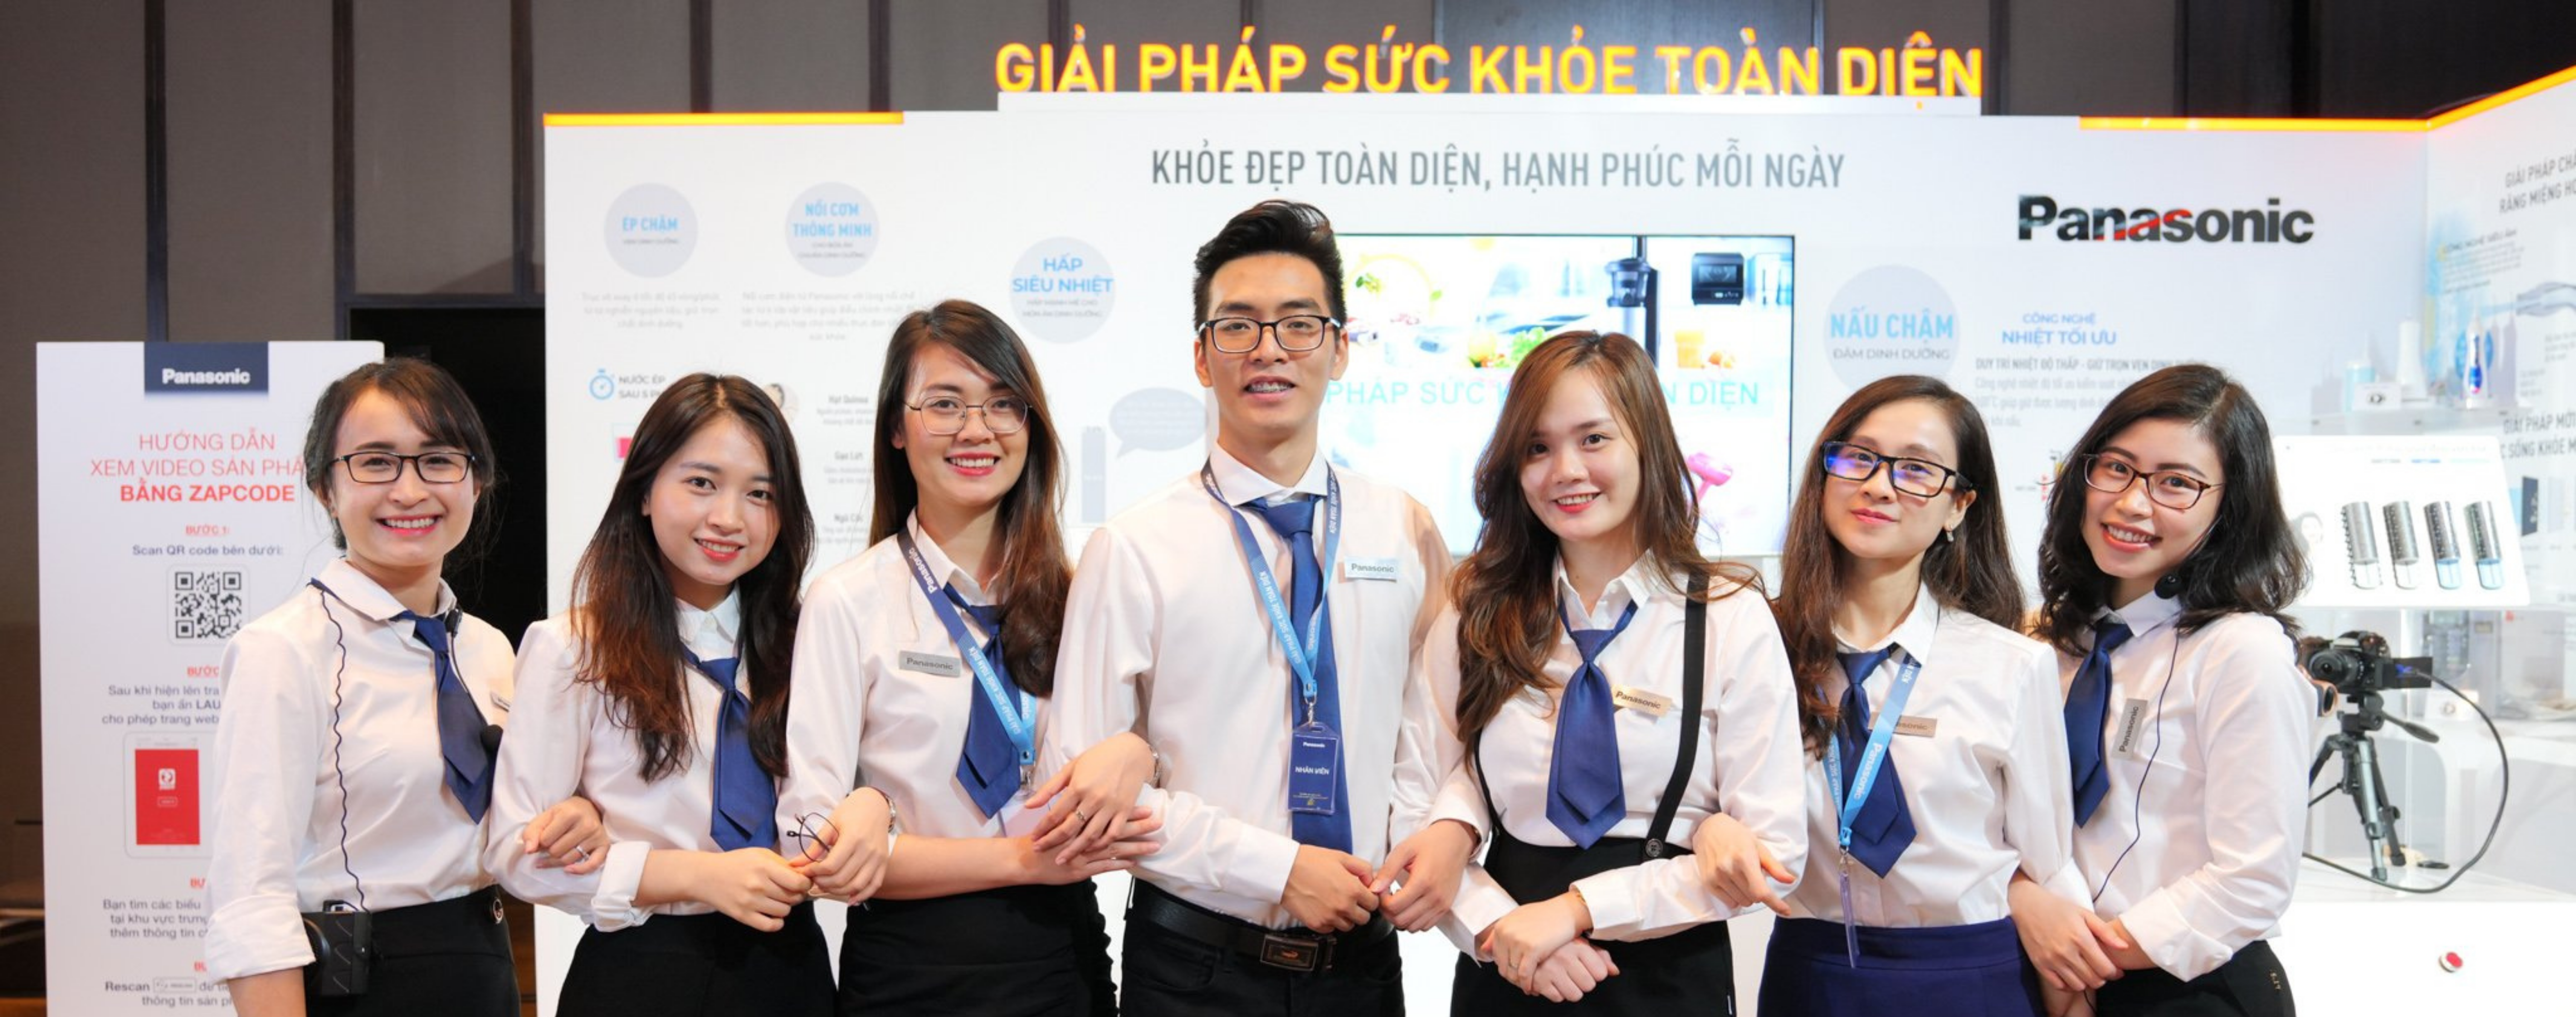 Trải nghiệm trở thành công dân tại Panasonic Việt Nam